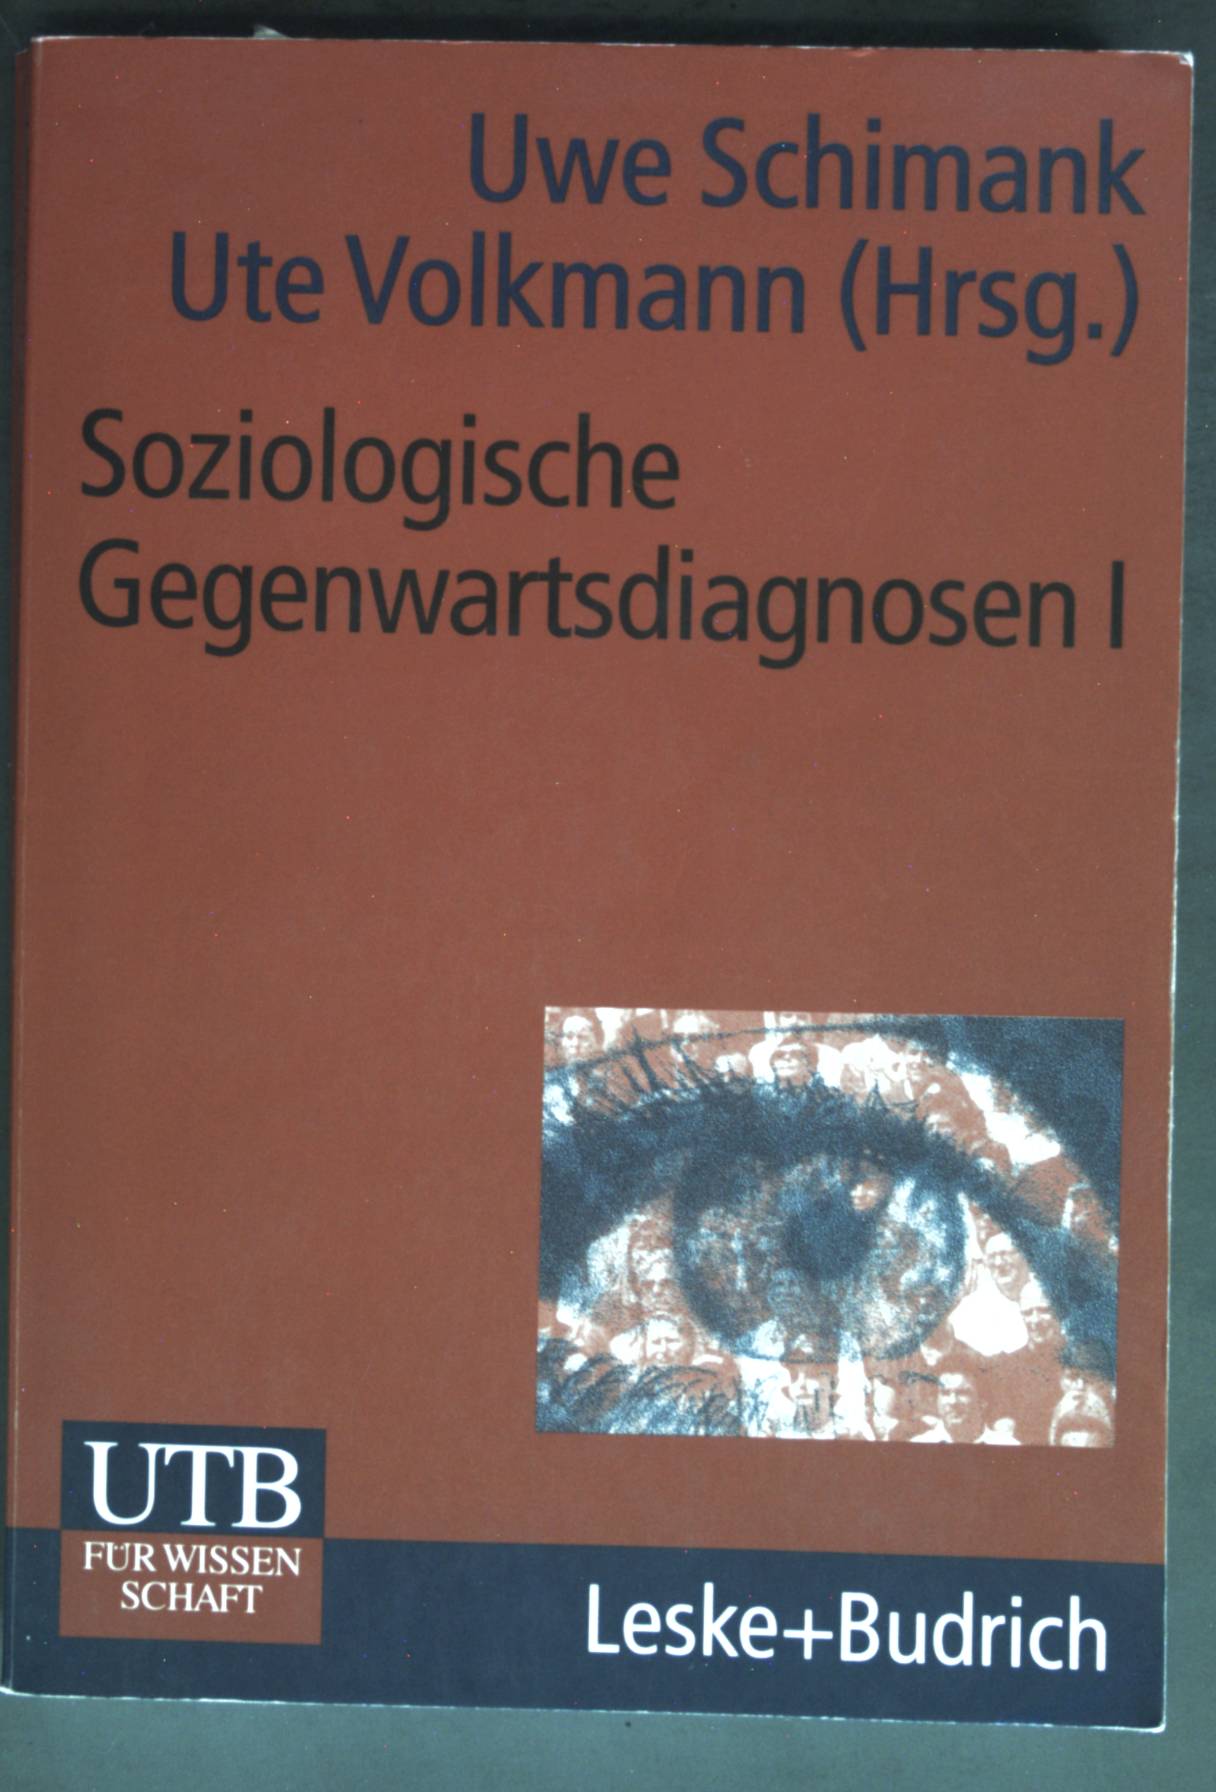 Soziologische Gegenwartsdiagnosen; Teil: 1., Eine Bestandsaufnahme. UTB ; 2158 - Schimank, Uwe und Ute Volkmann